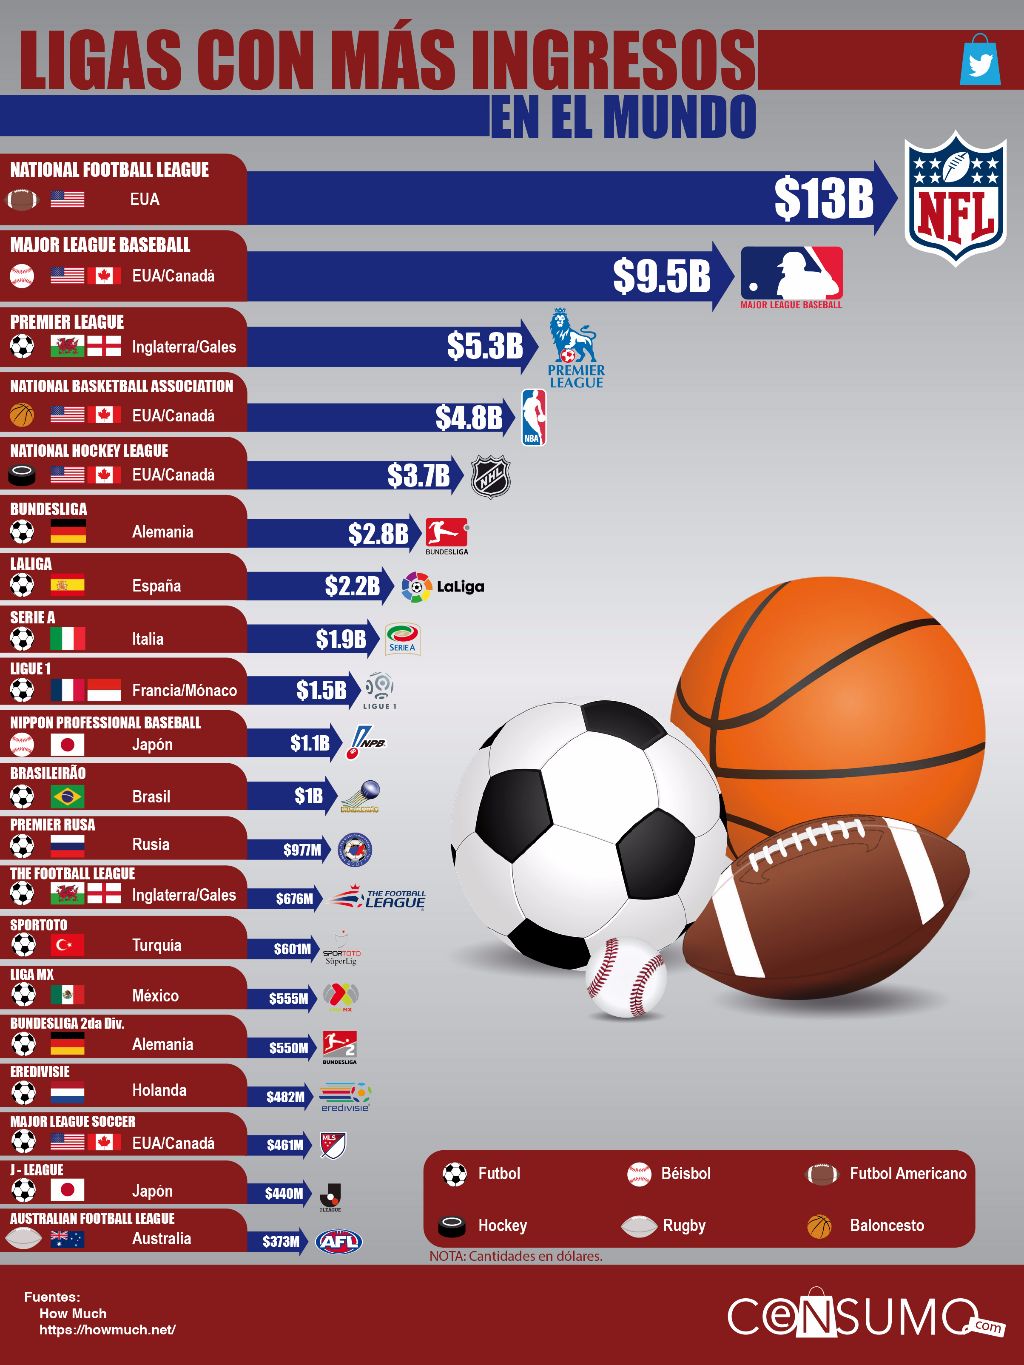 Las ligas deportivas con más ingresos en el mundo